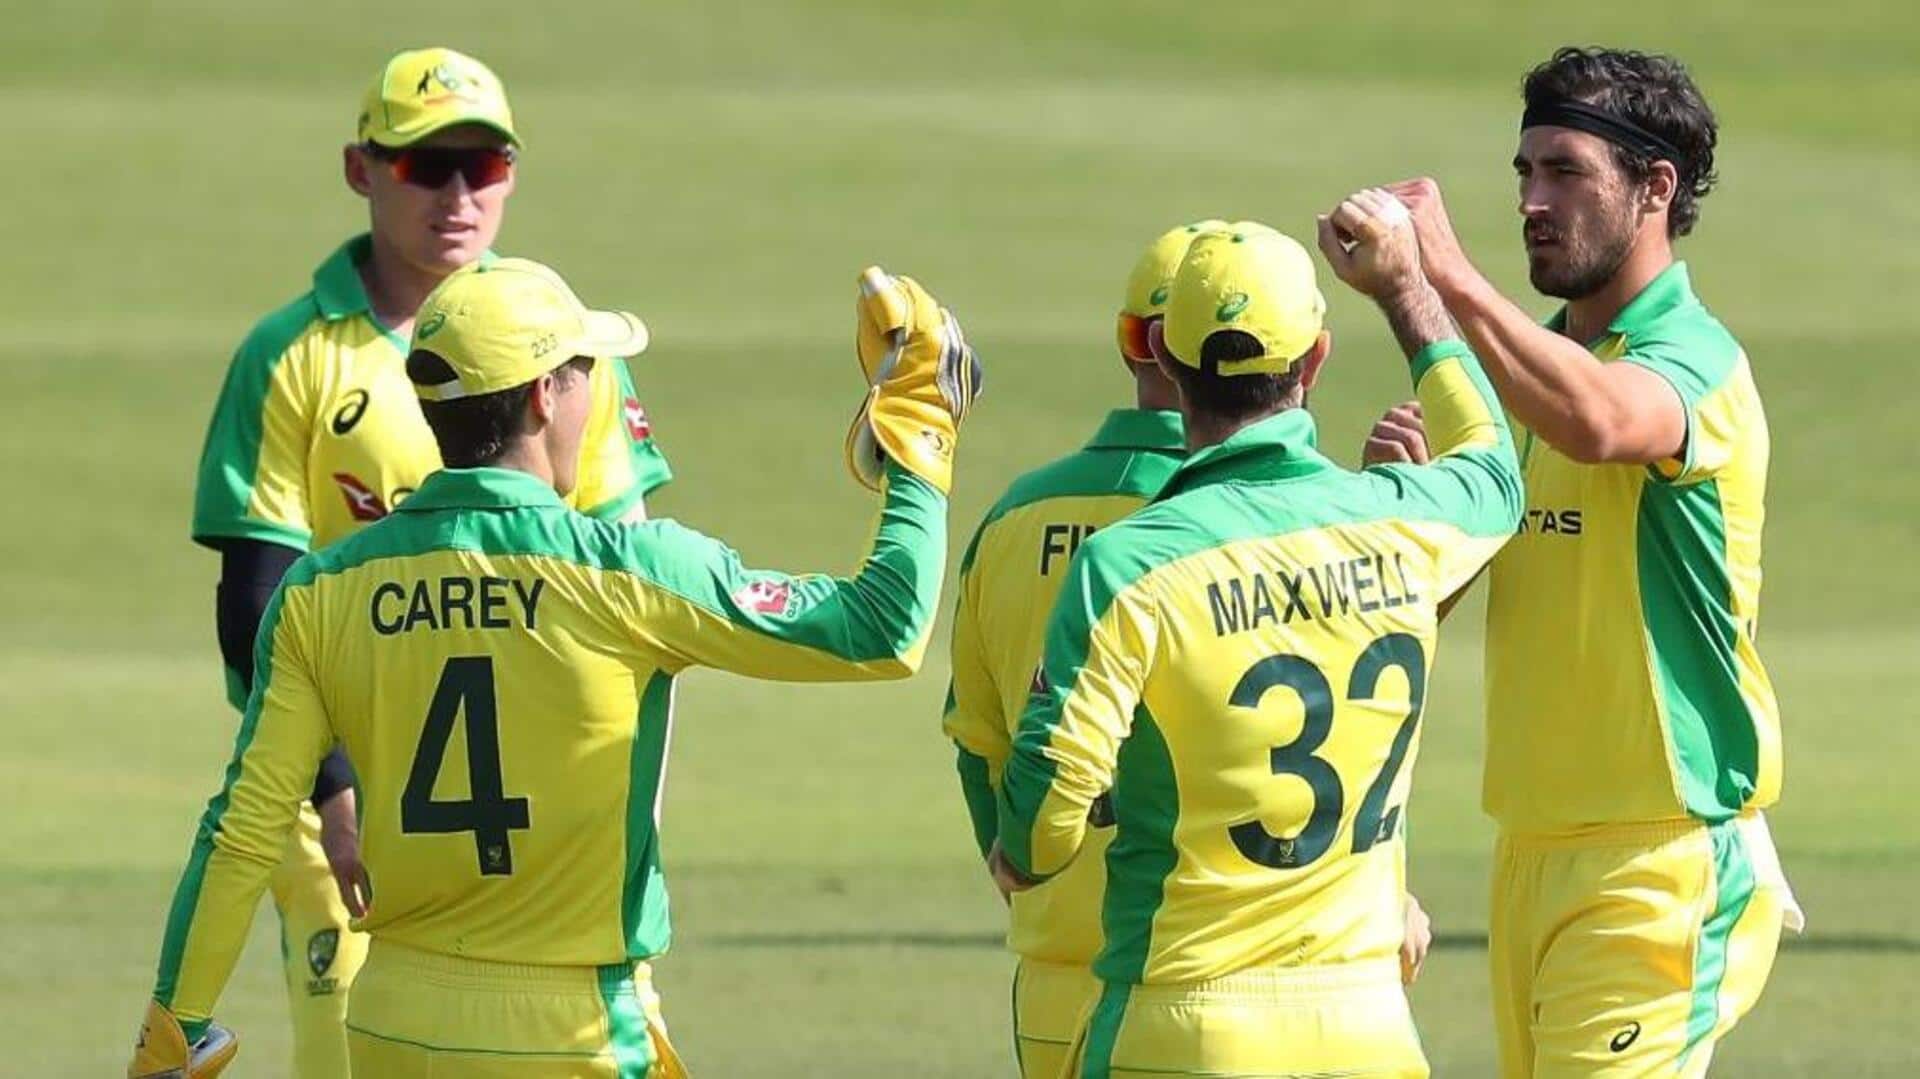 ऑस्ट्रेलिया बनाम वेस्टइंडीज: टी-20 में एक-दूसरे के खिलाफ कैसा रहा है प्रदर्शन? जानिए आंकड़े